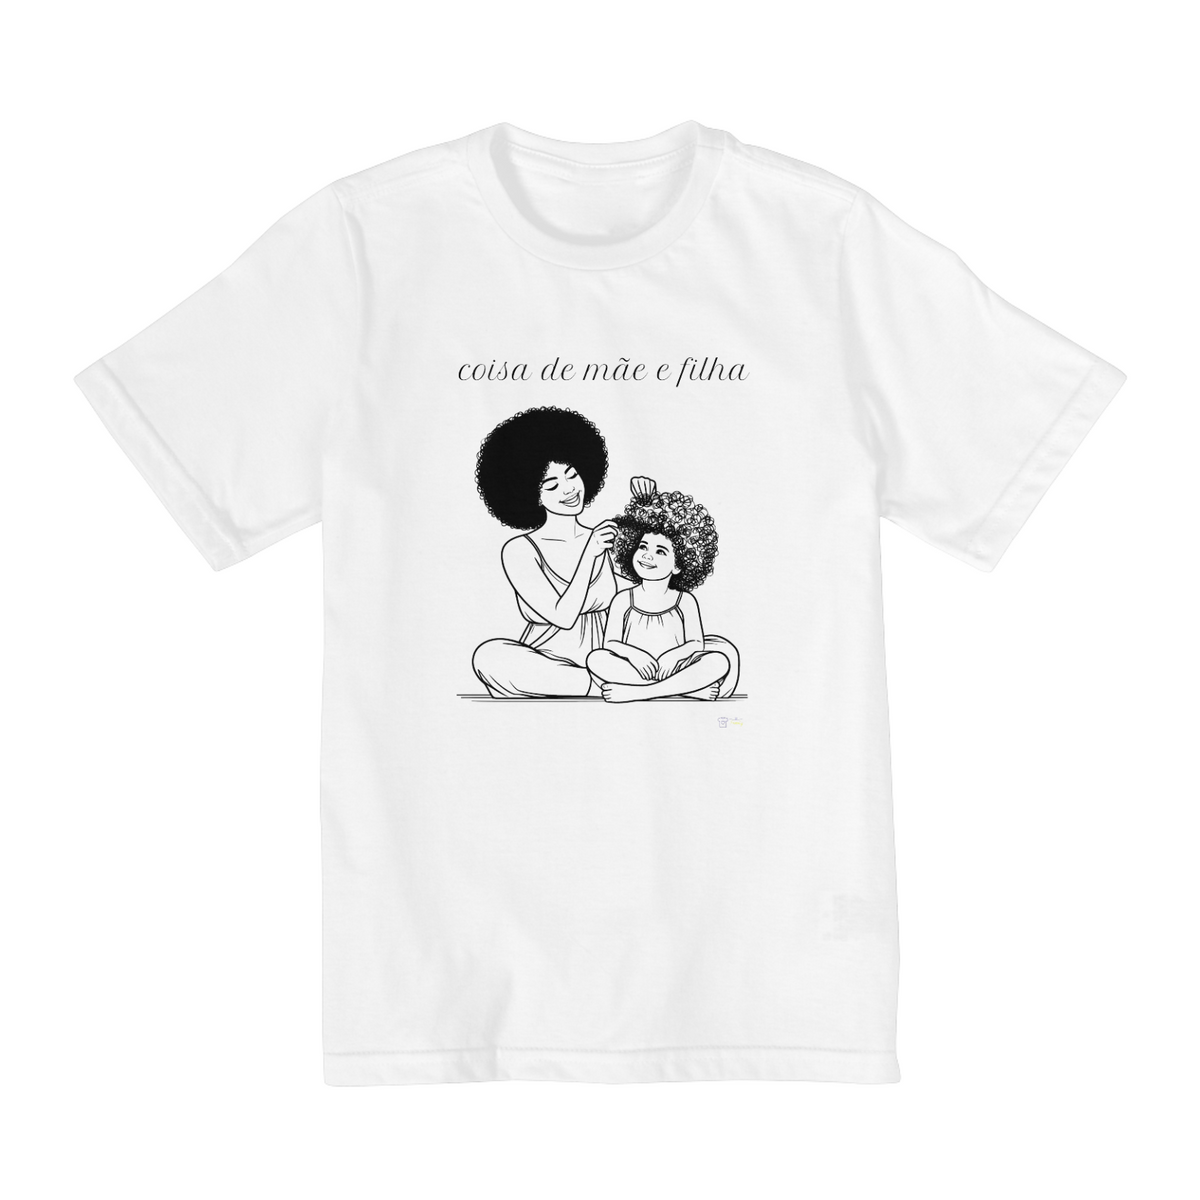 Nome do produto: Camiseta infantil mais coisas de mãe e filha